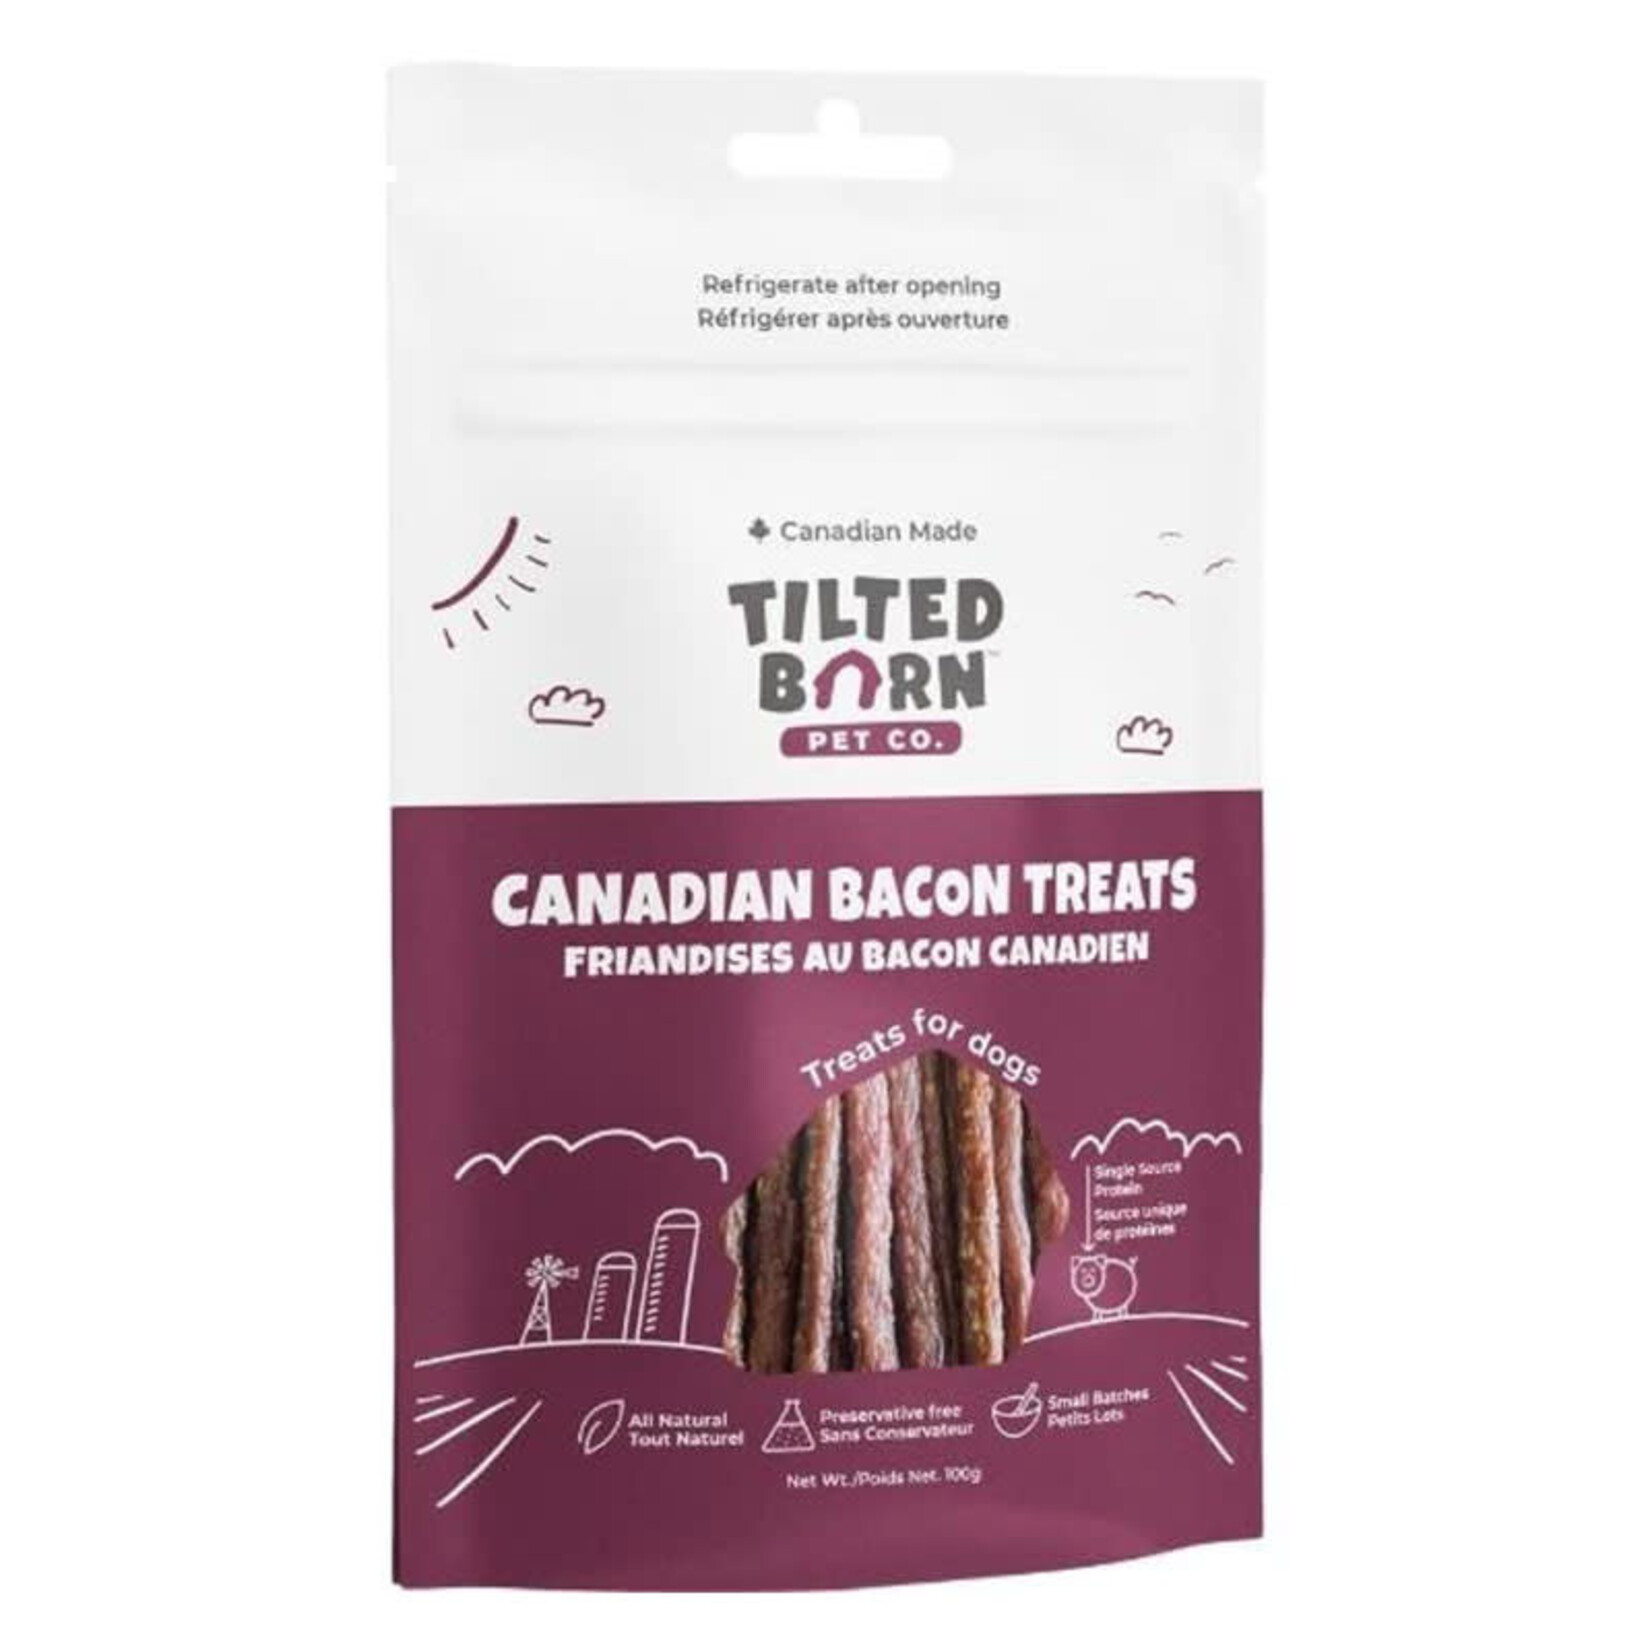 Tilted Barn - Canadian Bacon Treats - 100g